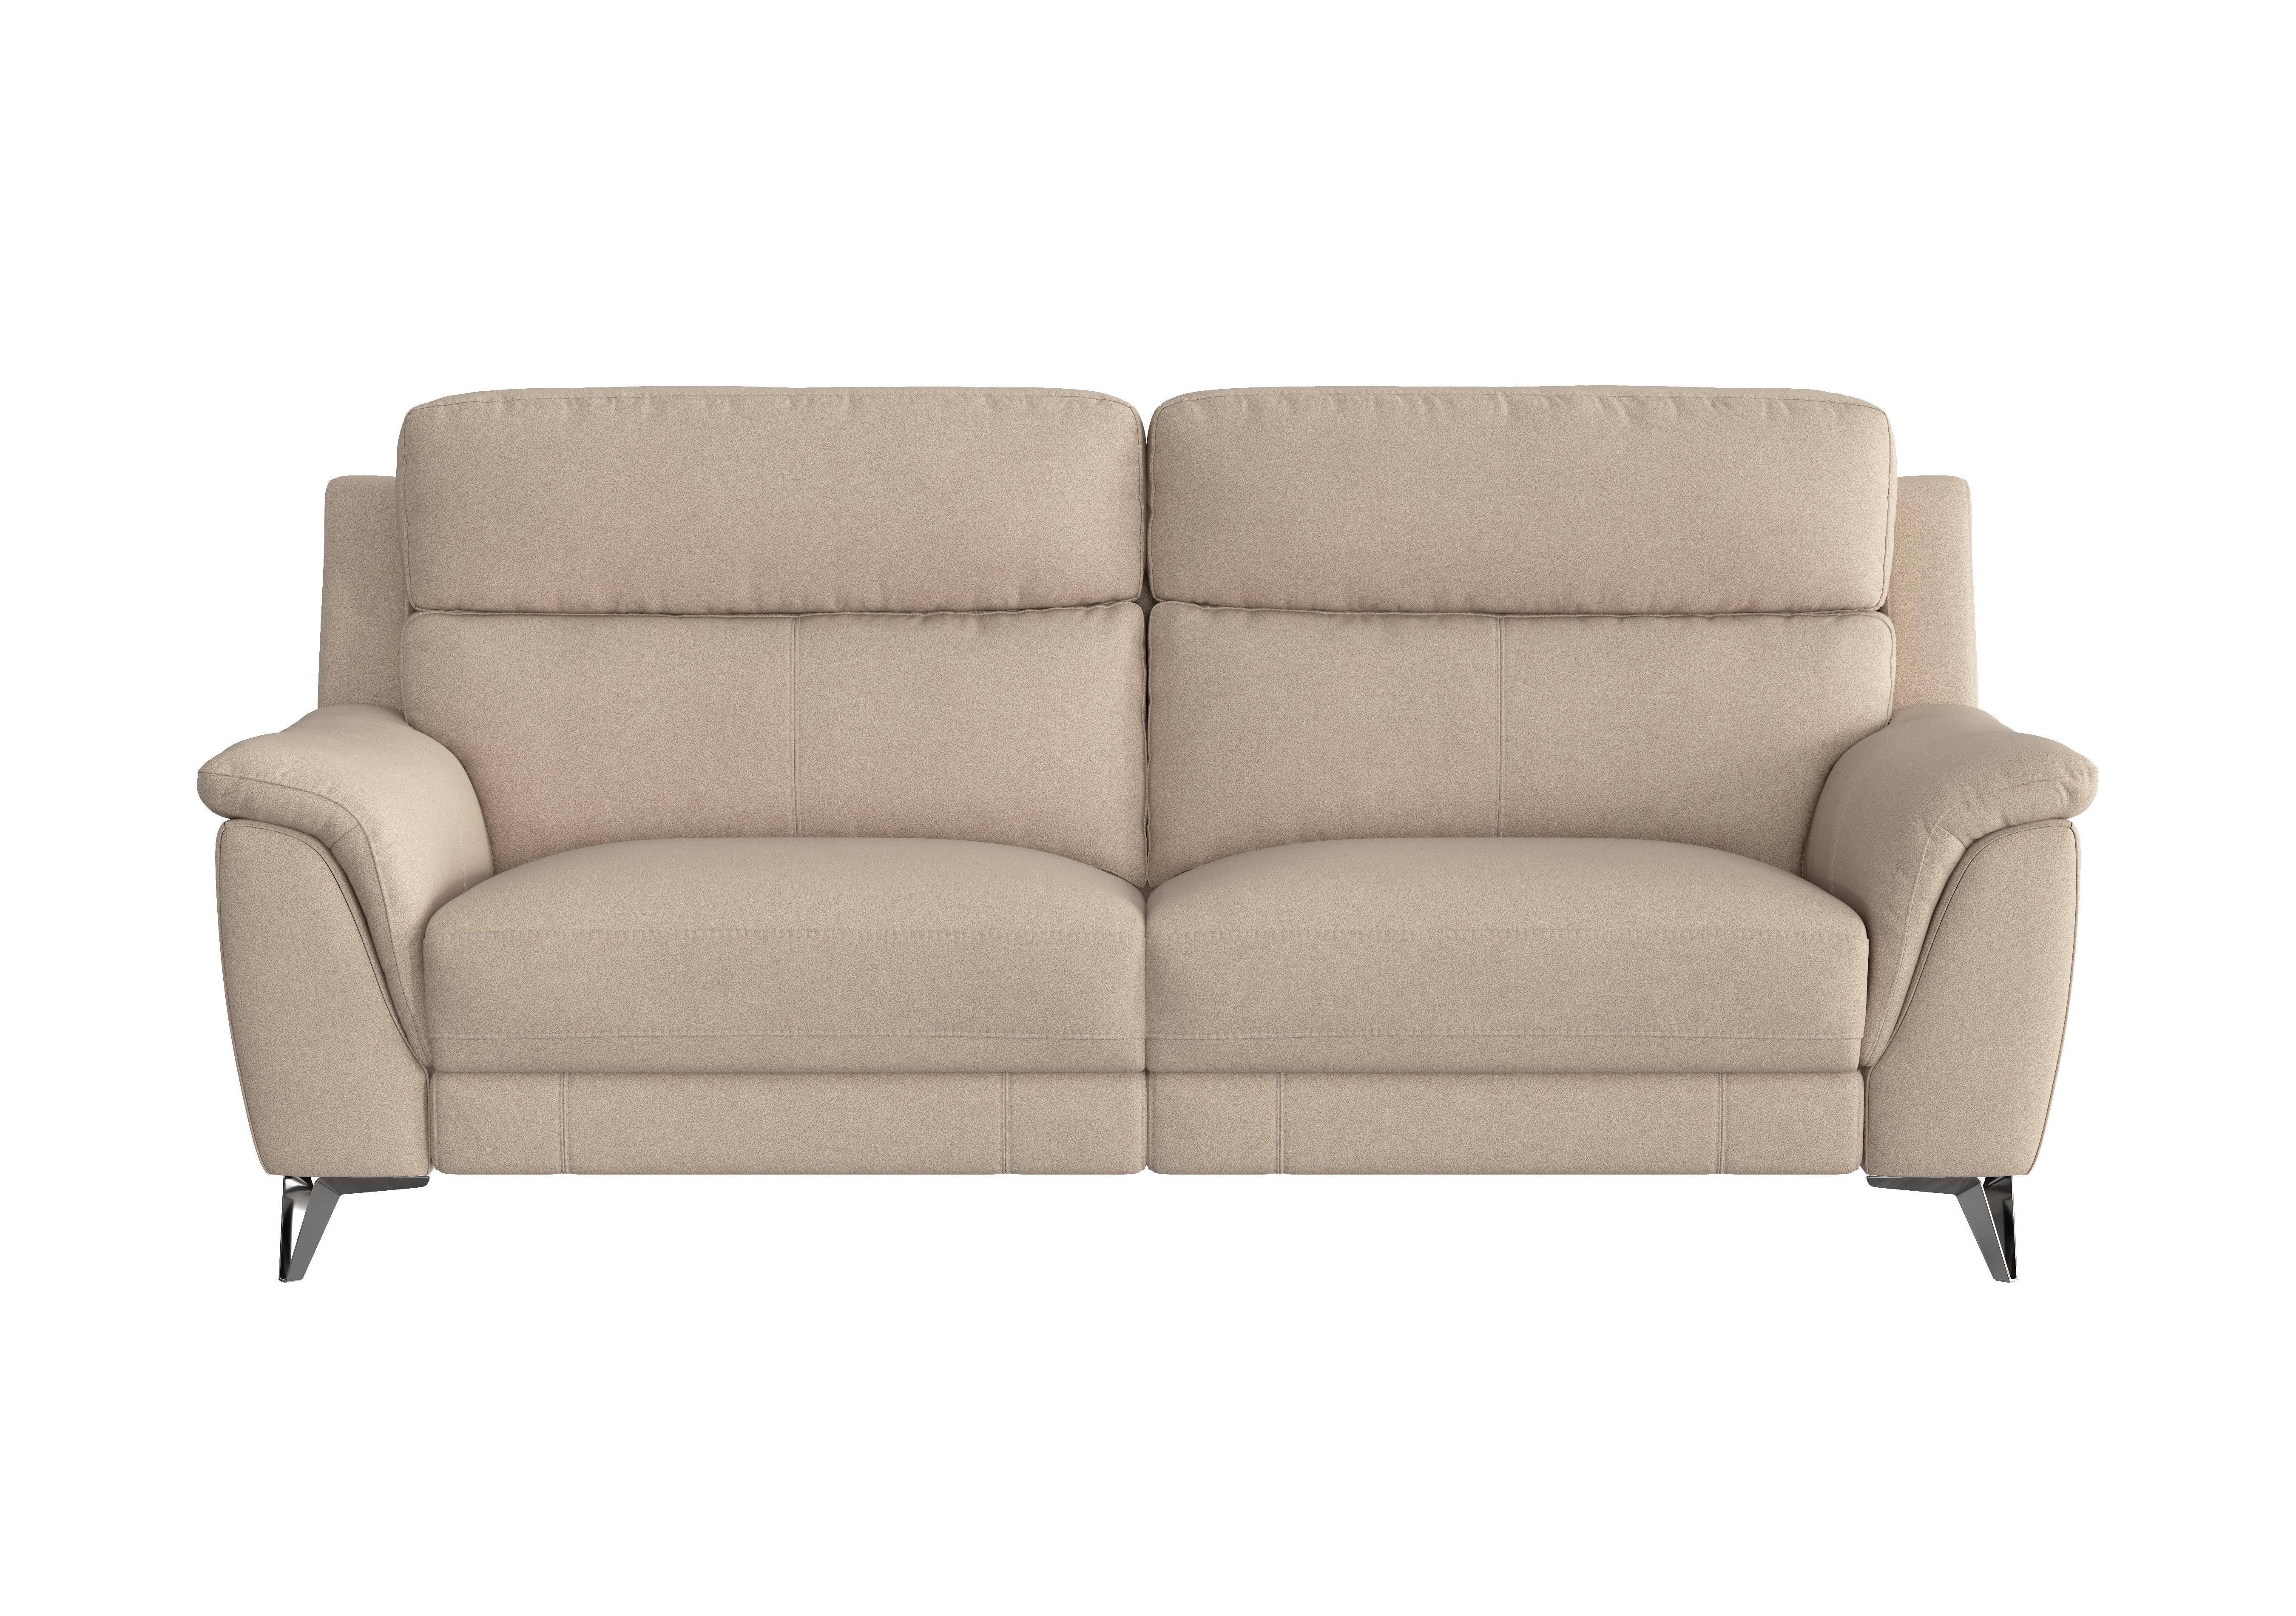 Contempo 3 Seater Fabric Sofa in Bfa-Blj-R20 Bisque on Furniture Village